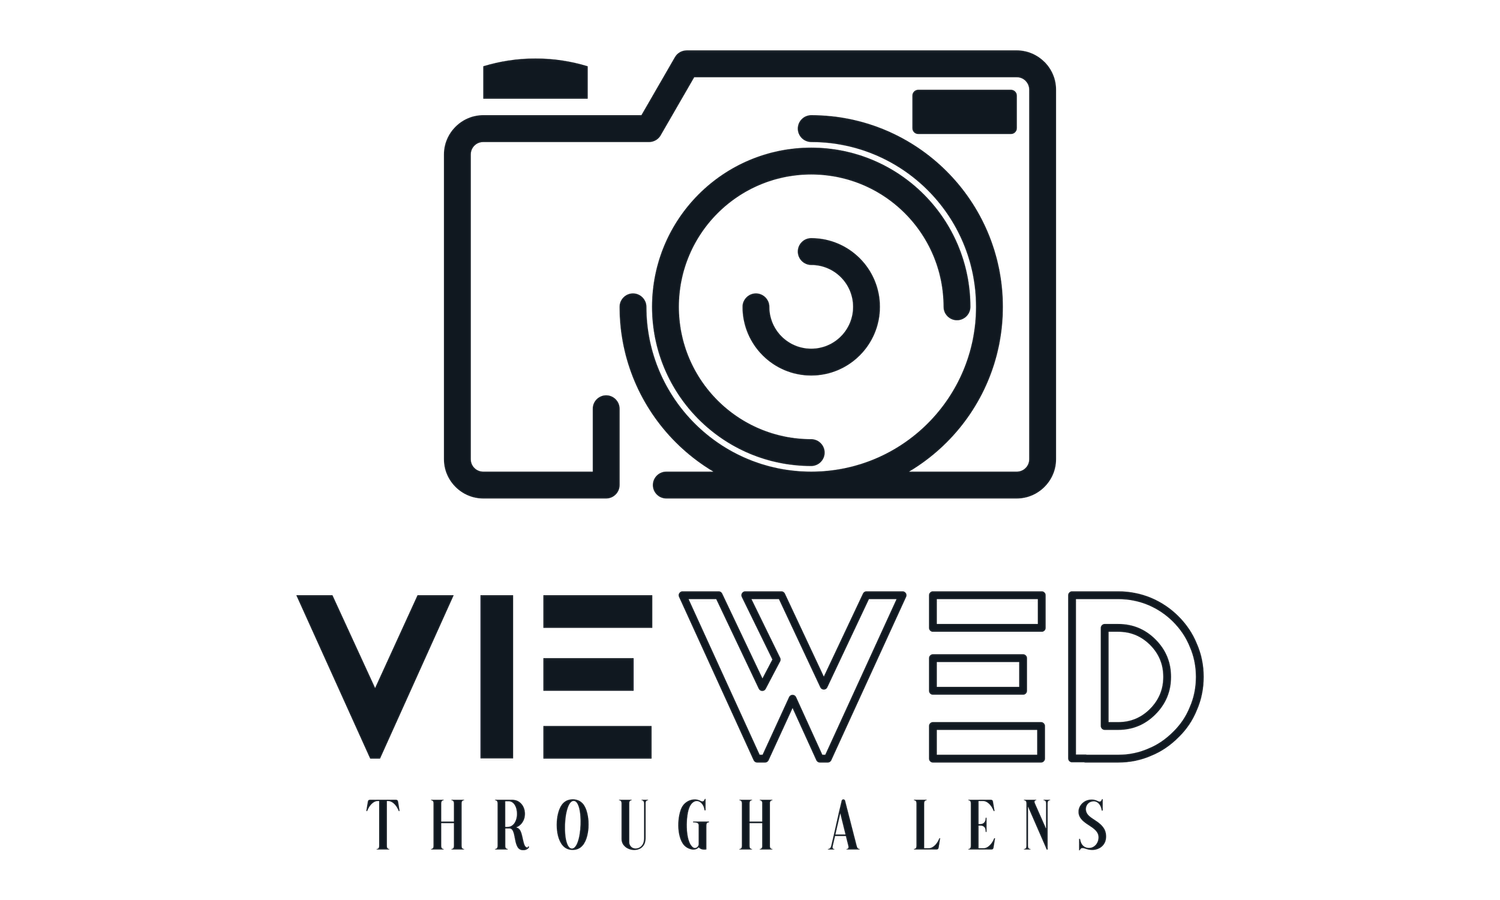 Viewed Through A Lens